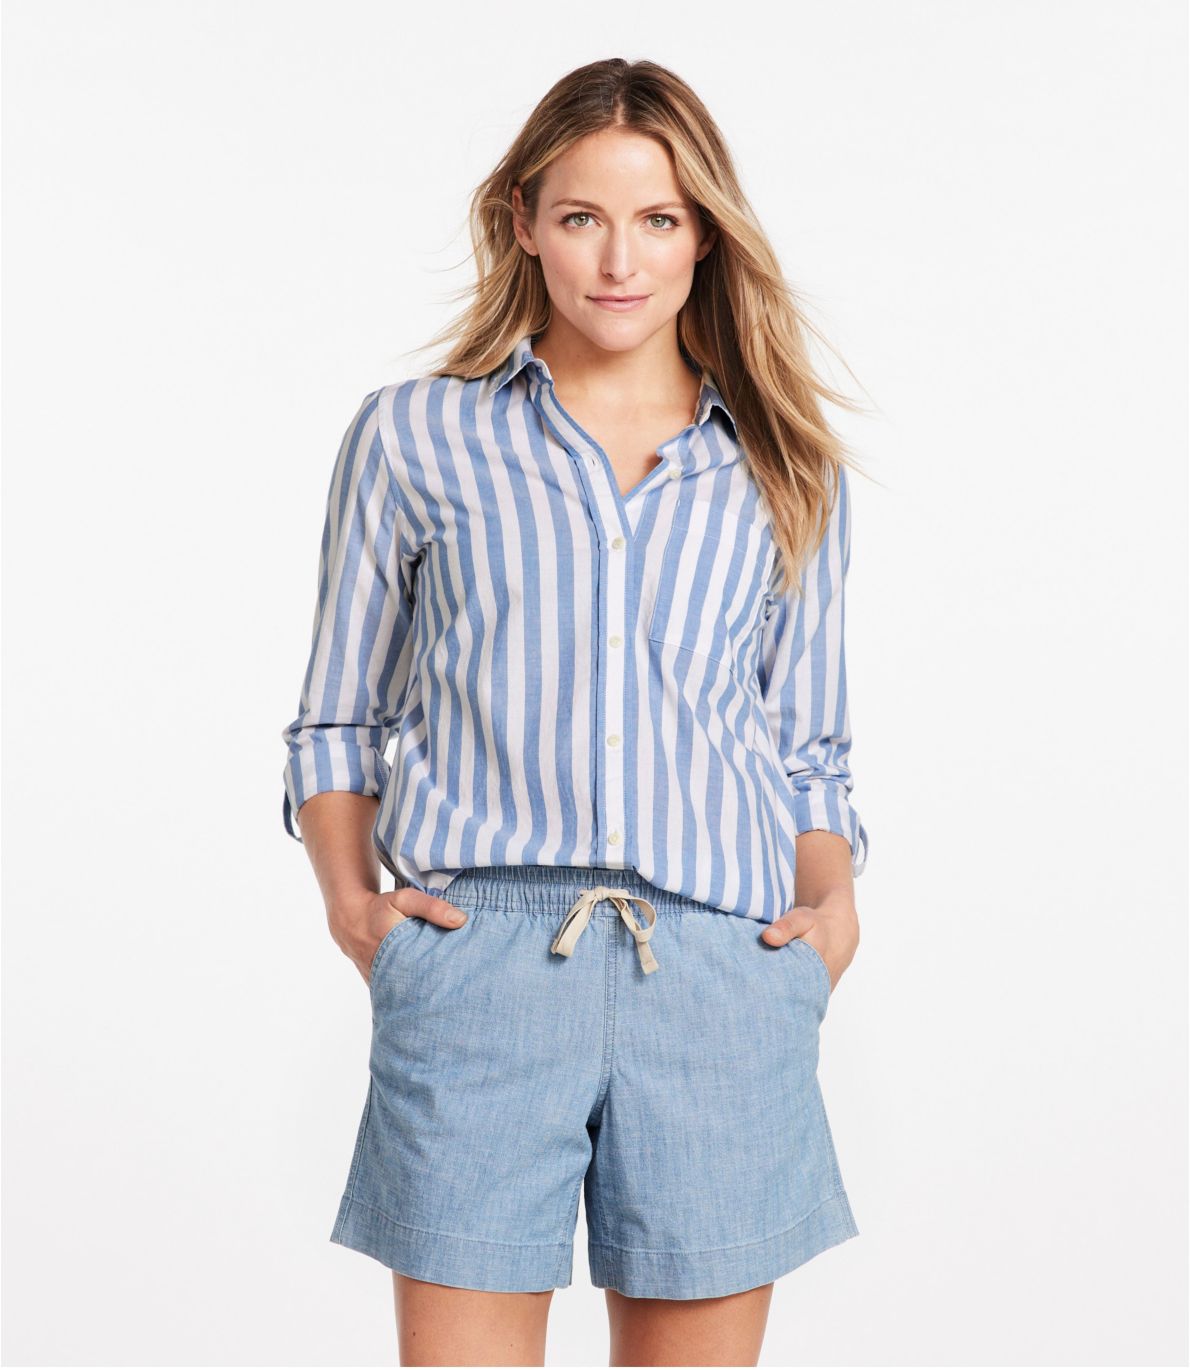 Women's Organic Classic Cotton Shirt, Long-Sleeve Stripe